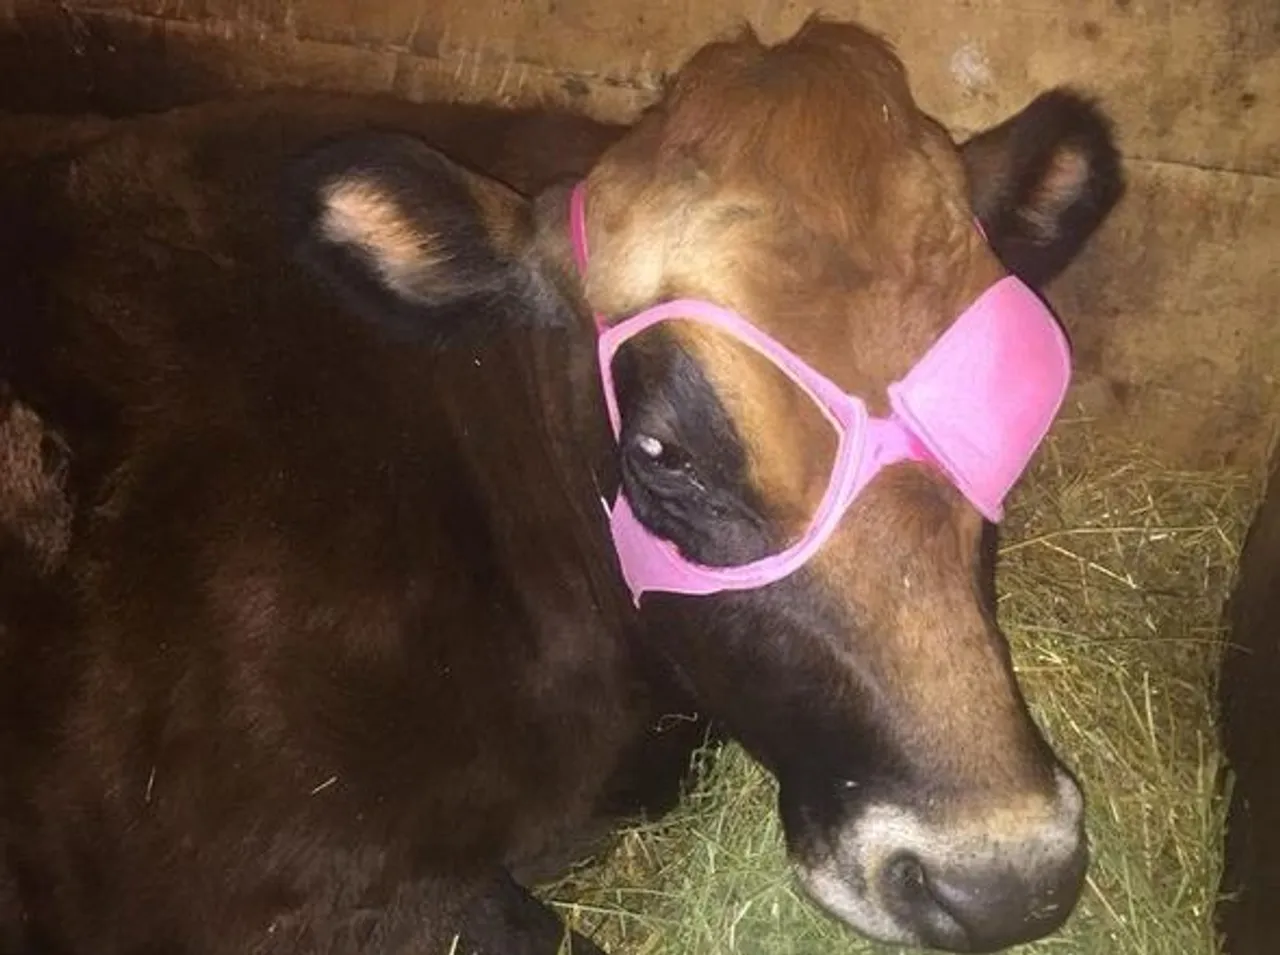 Krava je ozlijedila oko i veterinar je rekao da ga treba pokriti kako bi brže zacijelilo